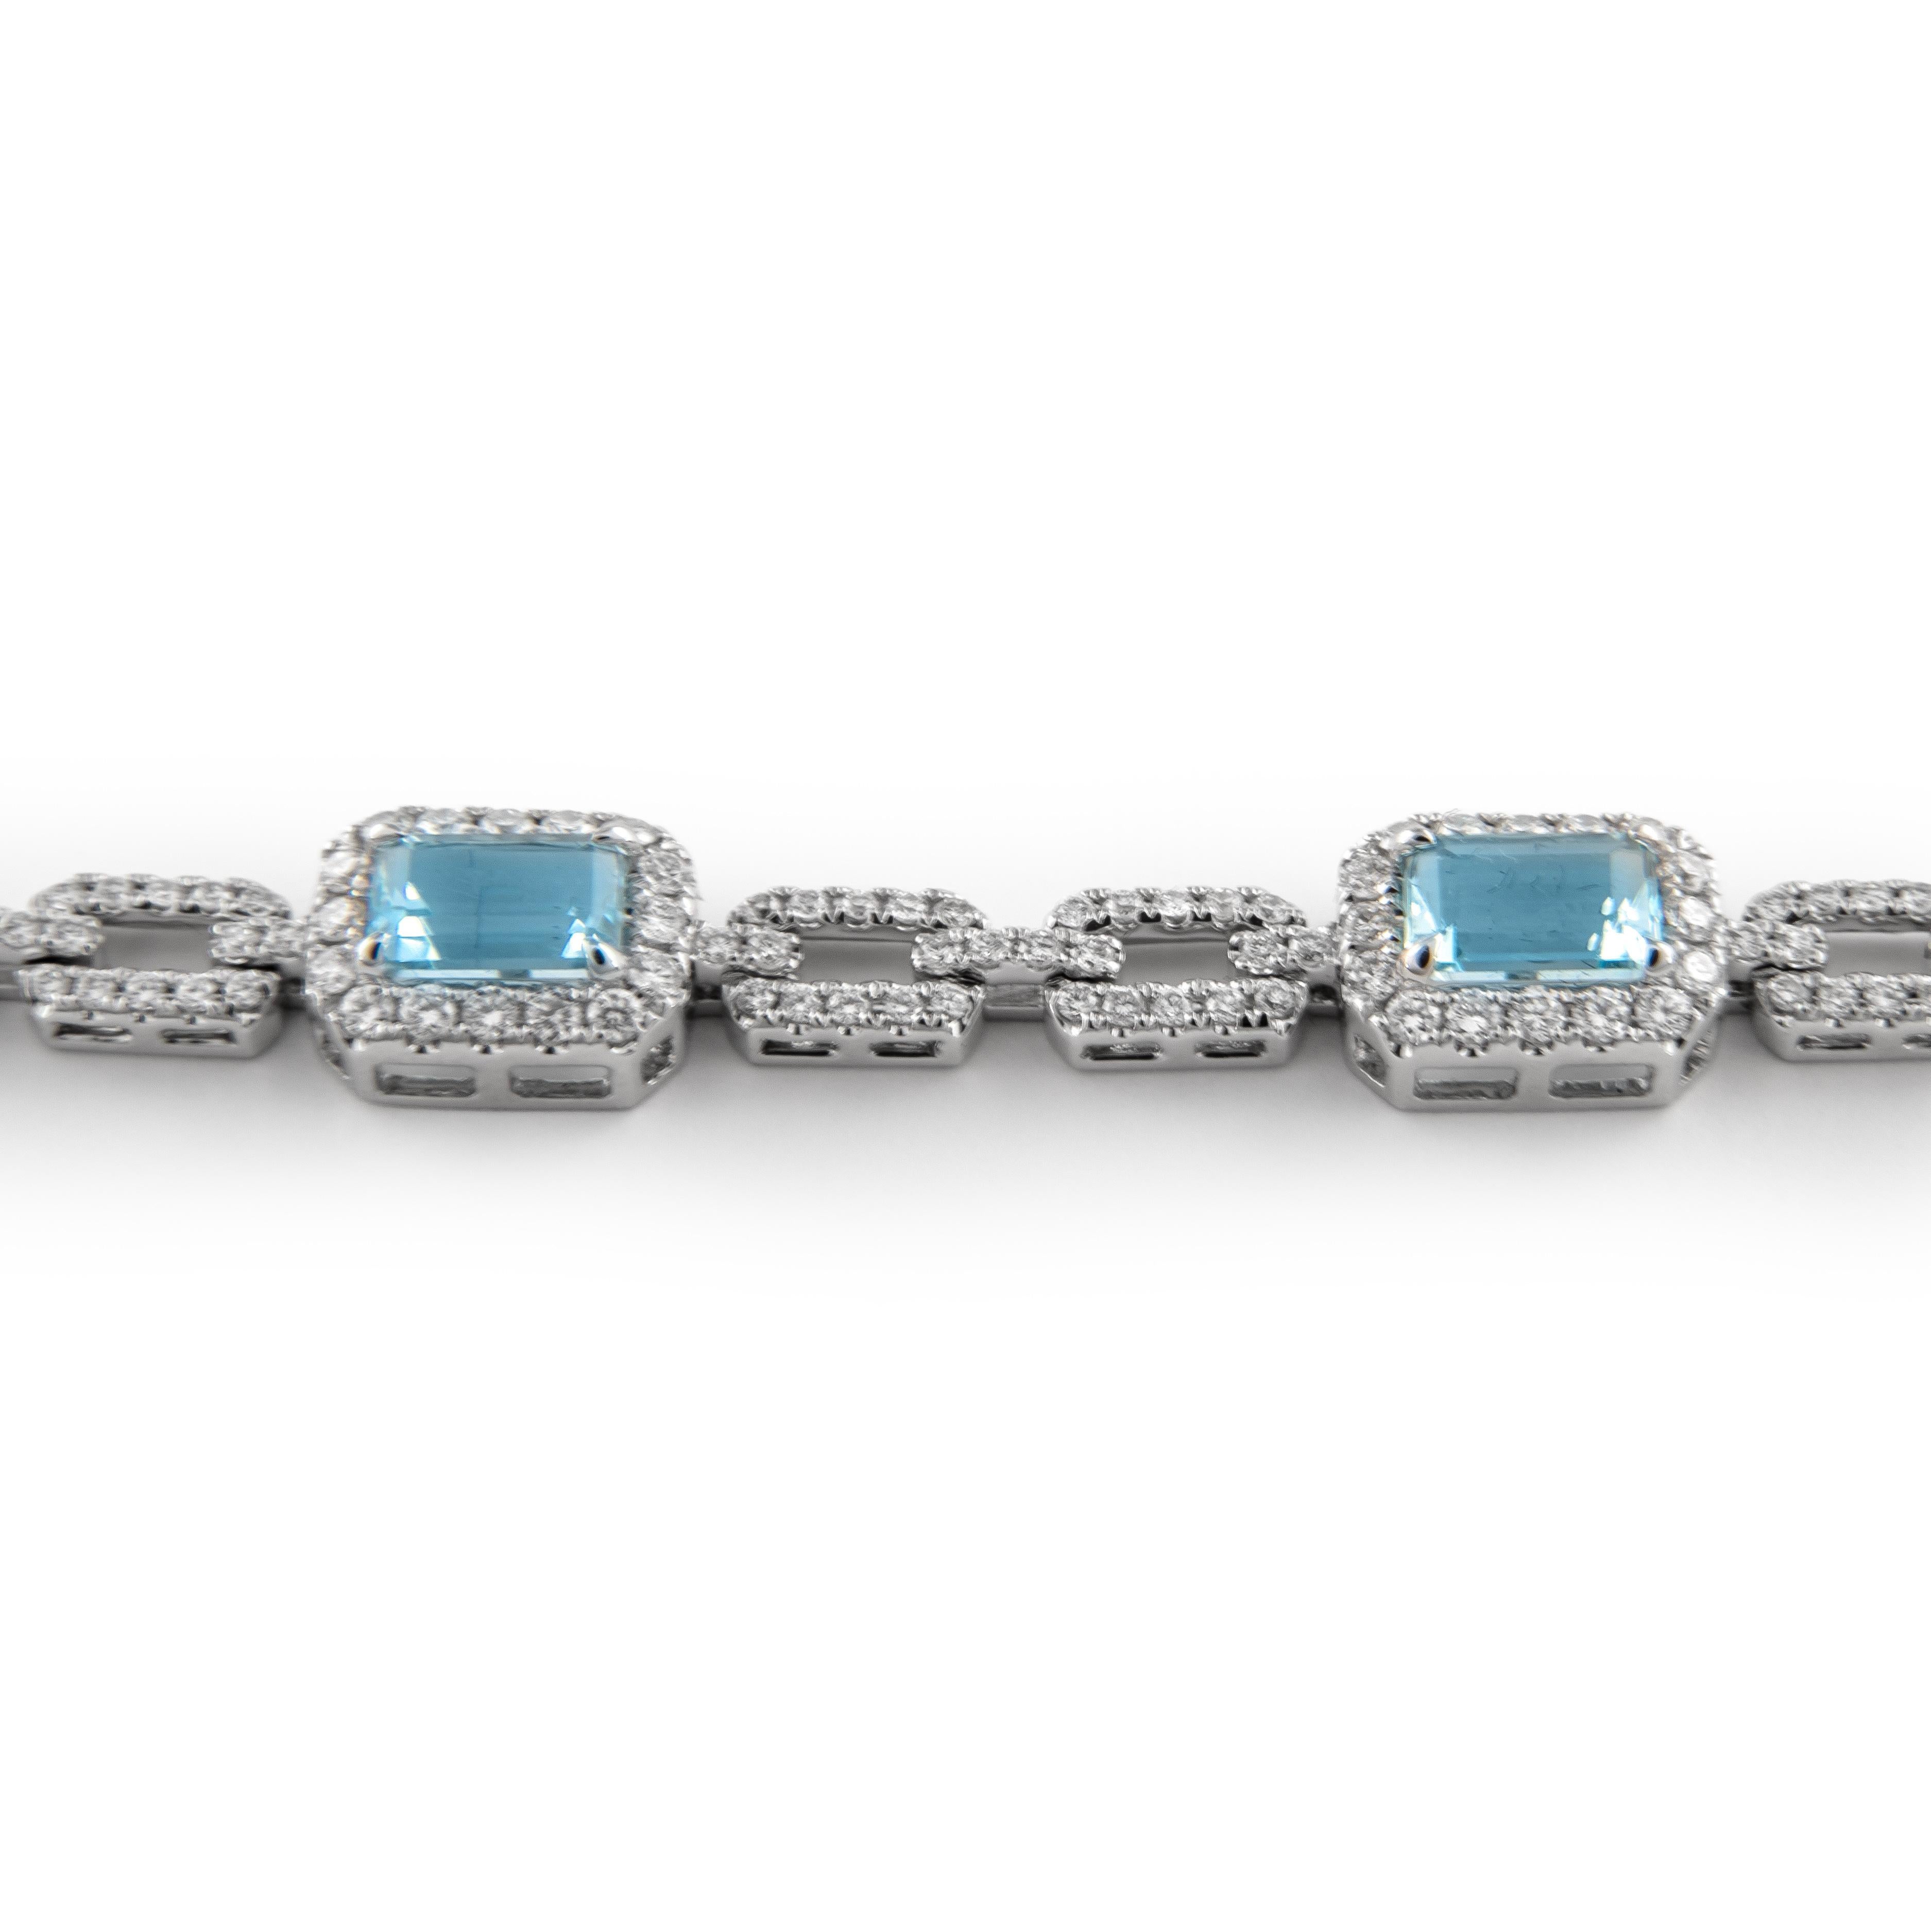 Exquis bracelet moderne en aigue-marine et diamants, par Alexander Beverly Hills.
Poids total des pierres précieuses : 5.71 carats.
7 aigues-marines de taille émeraude, 3,90 carats. Complété par 301 diamants ronds de taille brillant, 1,81 carats.